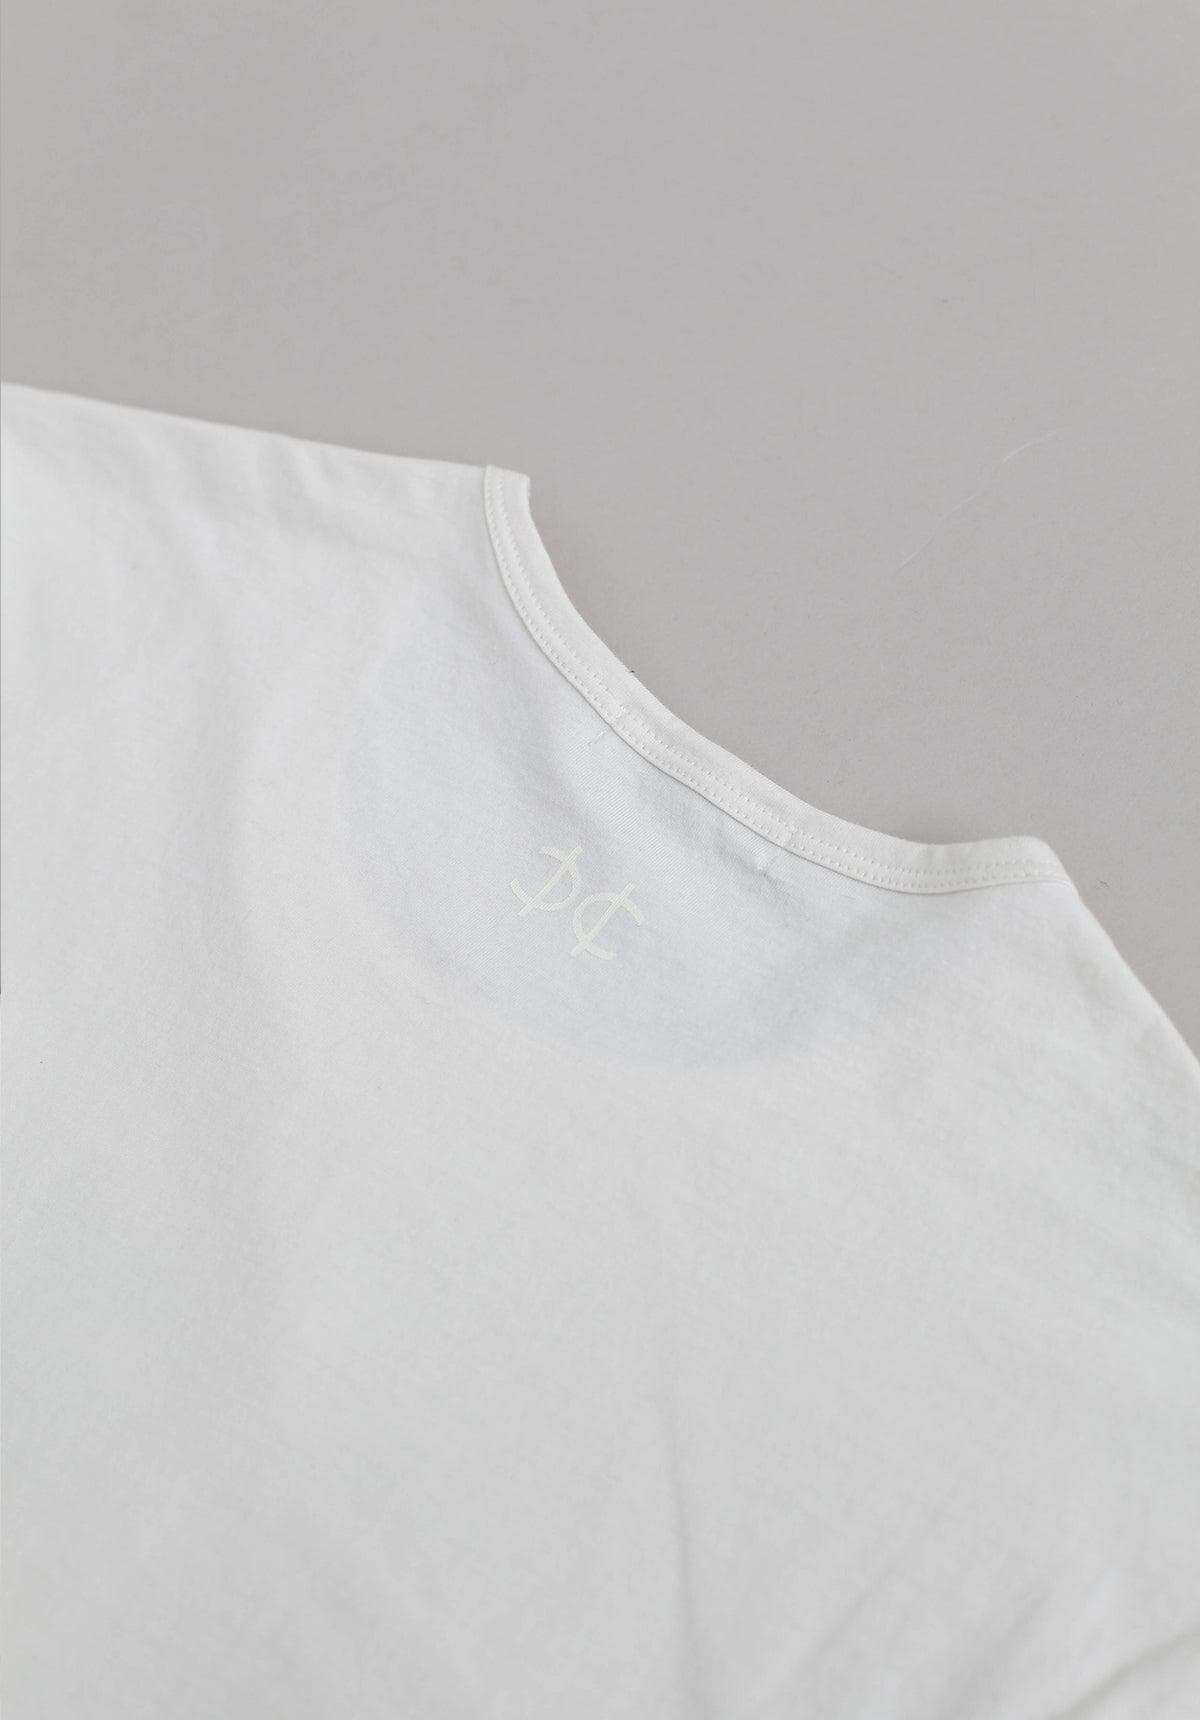 T shirt - White